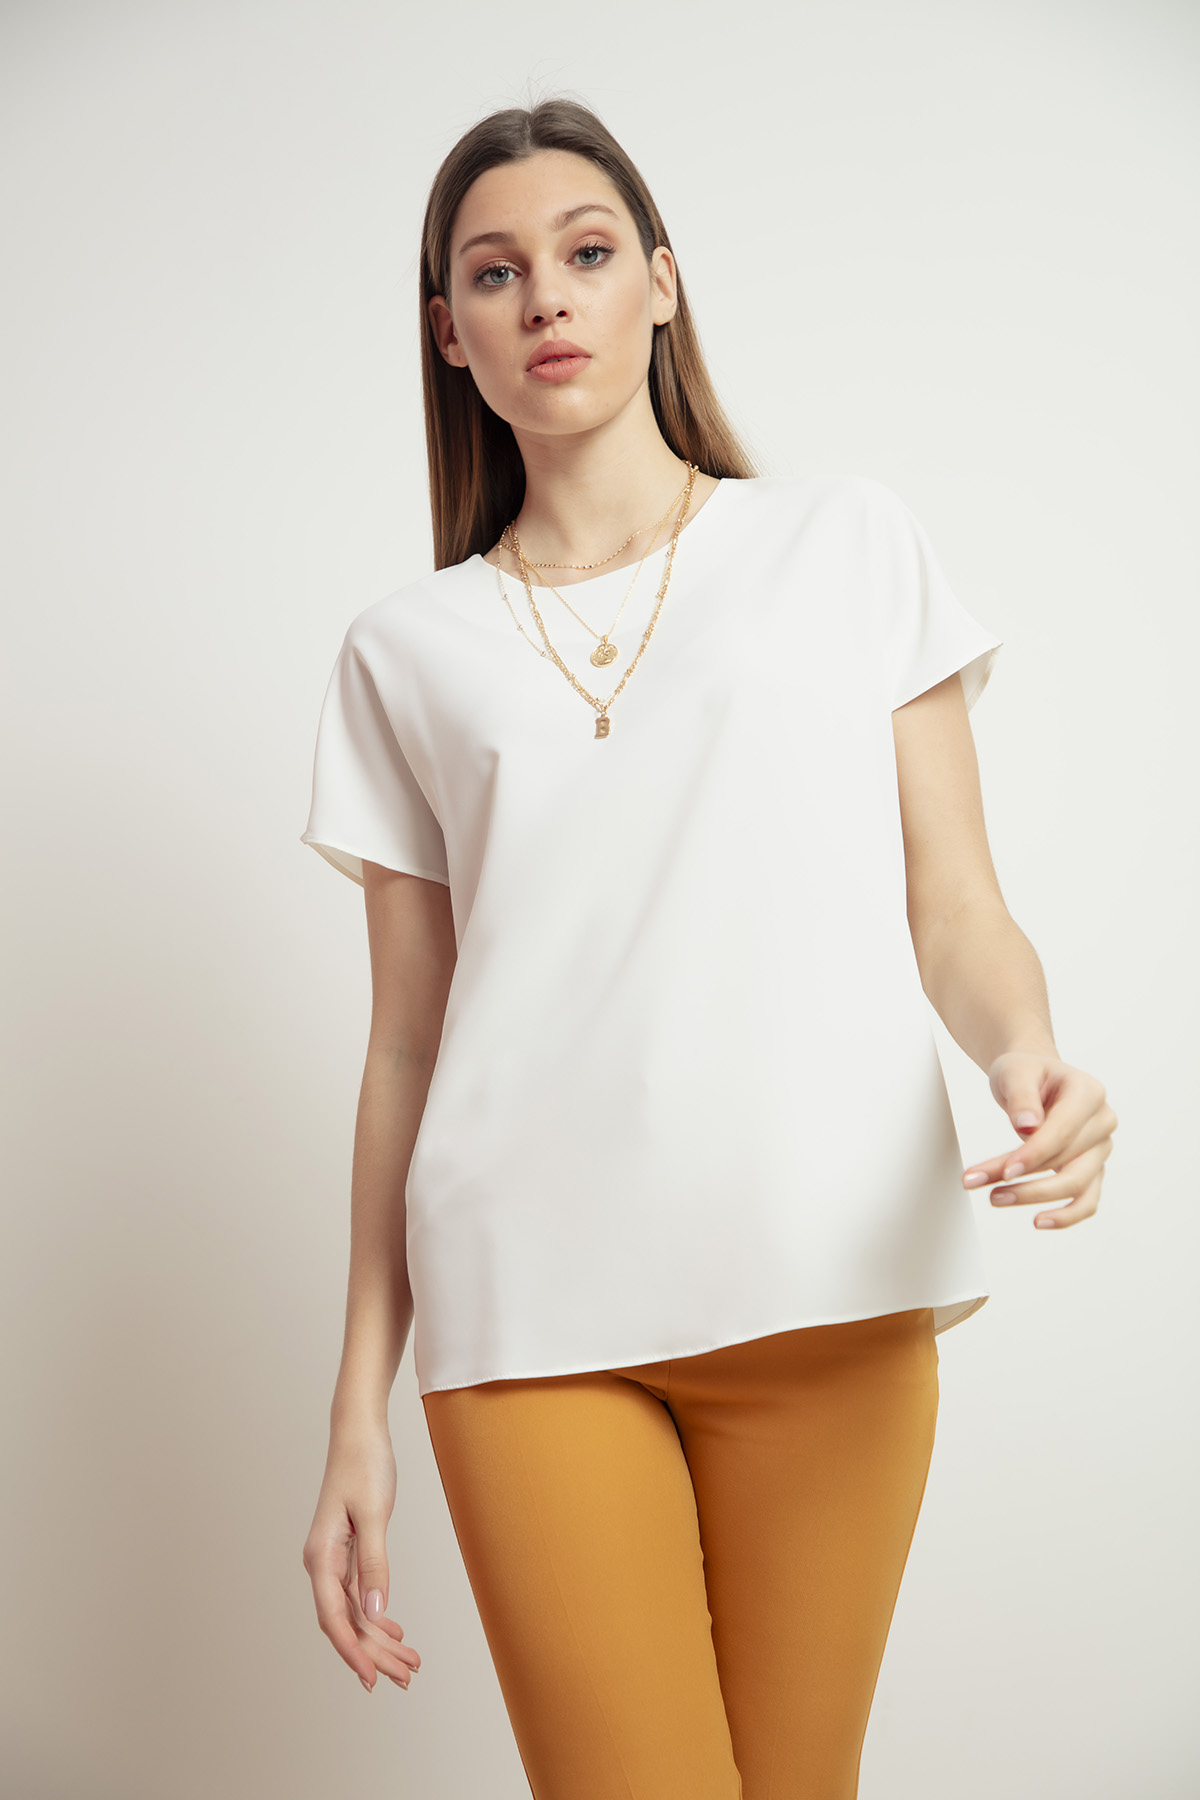 Women's White Short Sleeve Blouse